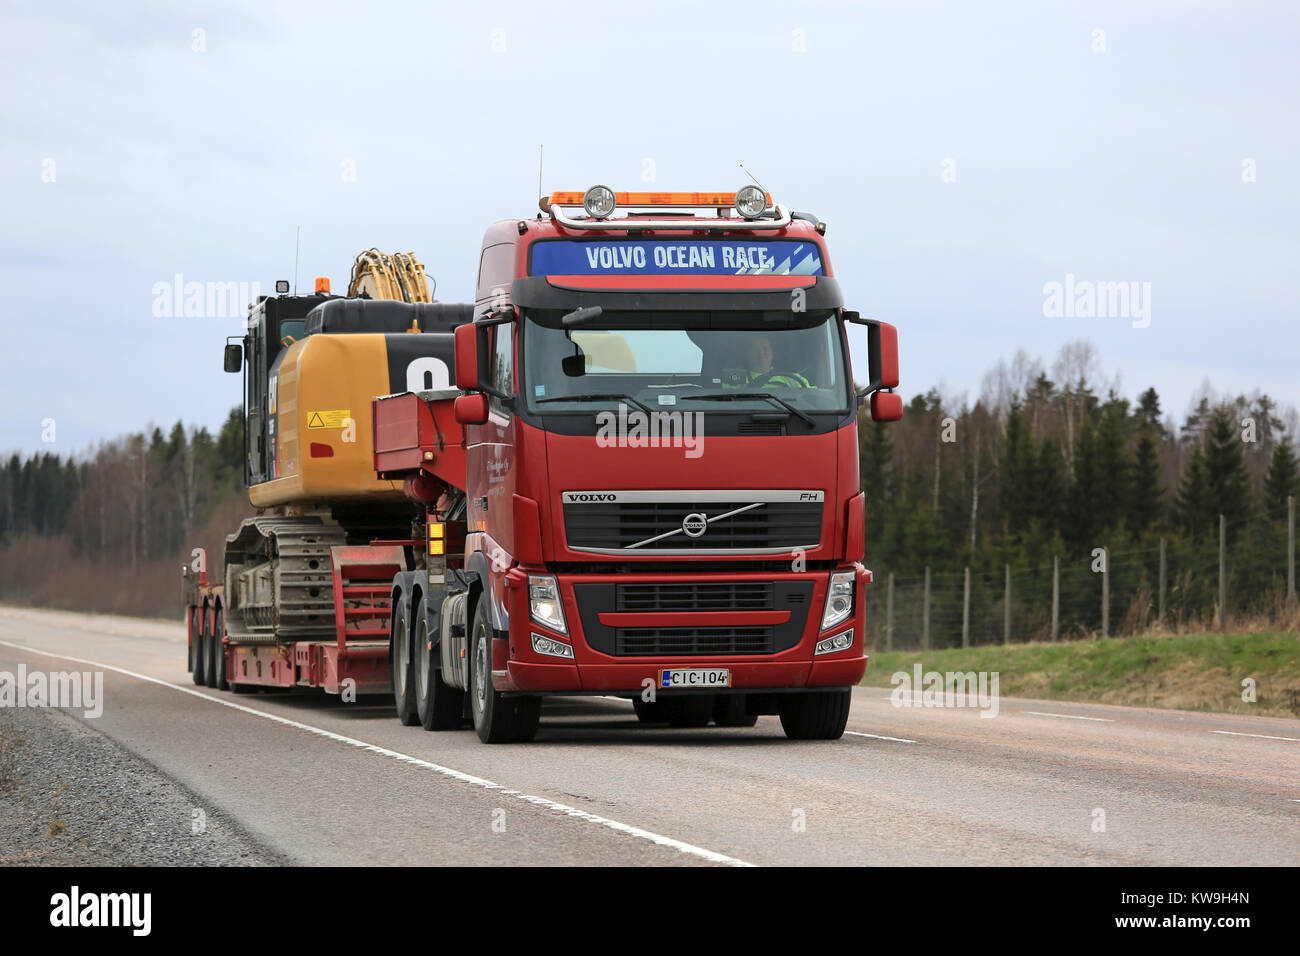 ORIVESI, Finlandia - 17 de mayo de 2017: Volvo FH semi lances Cat 336FL gran hidráulica Excavadora de oruga sobre remolque cuello de ganso junto a la autopista en primavera. Foto de stock